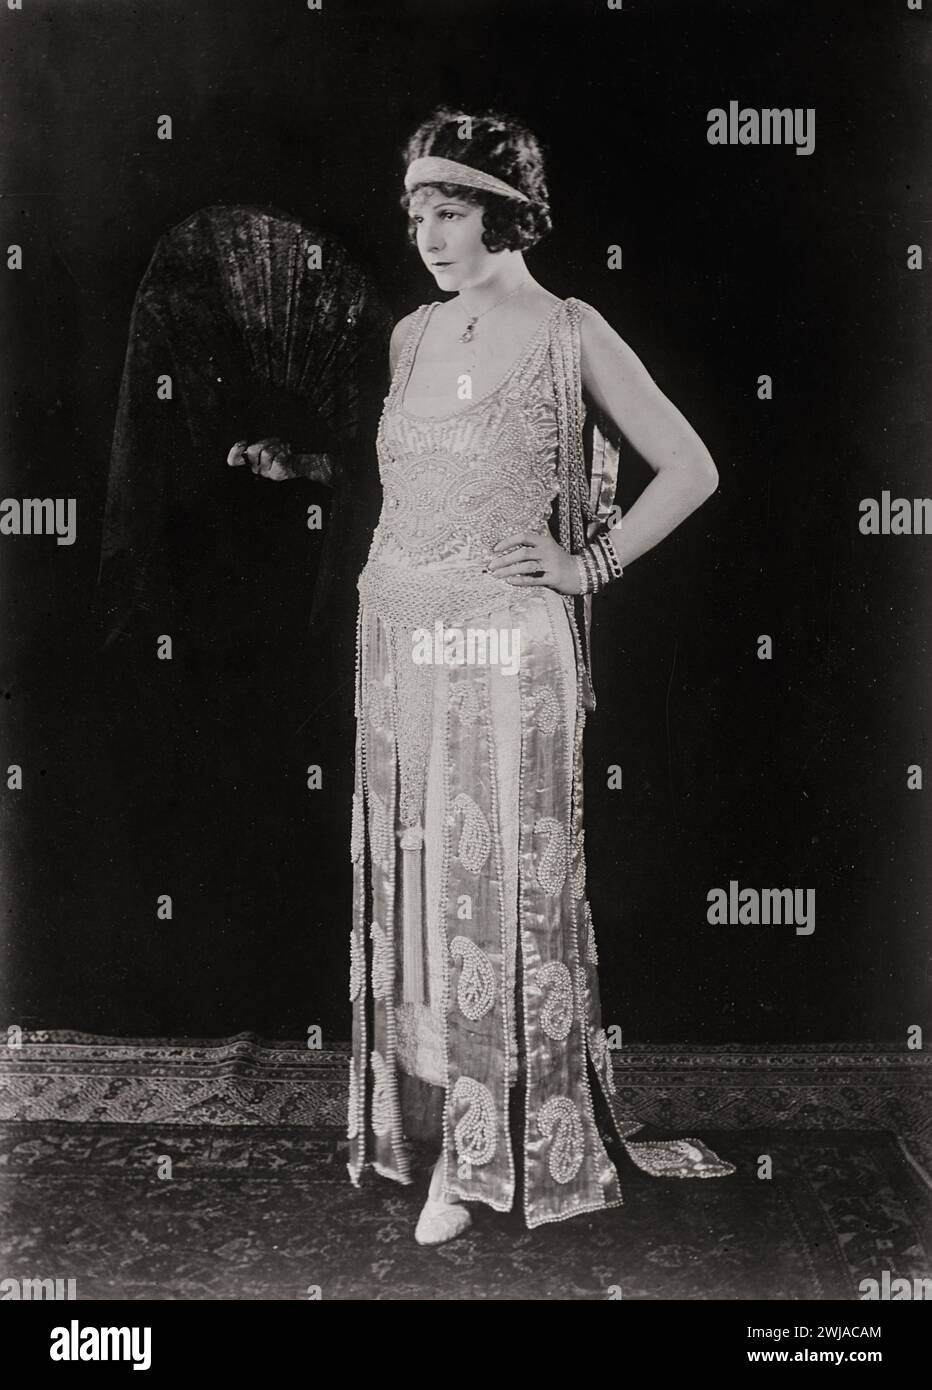 Célèbre actrice américaine et productrice de films de l'ère du muet, Norma Marie Talmadge (1894-1957) Banque D'Images